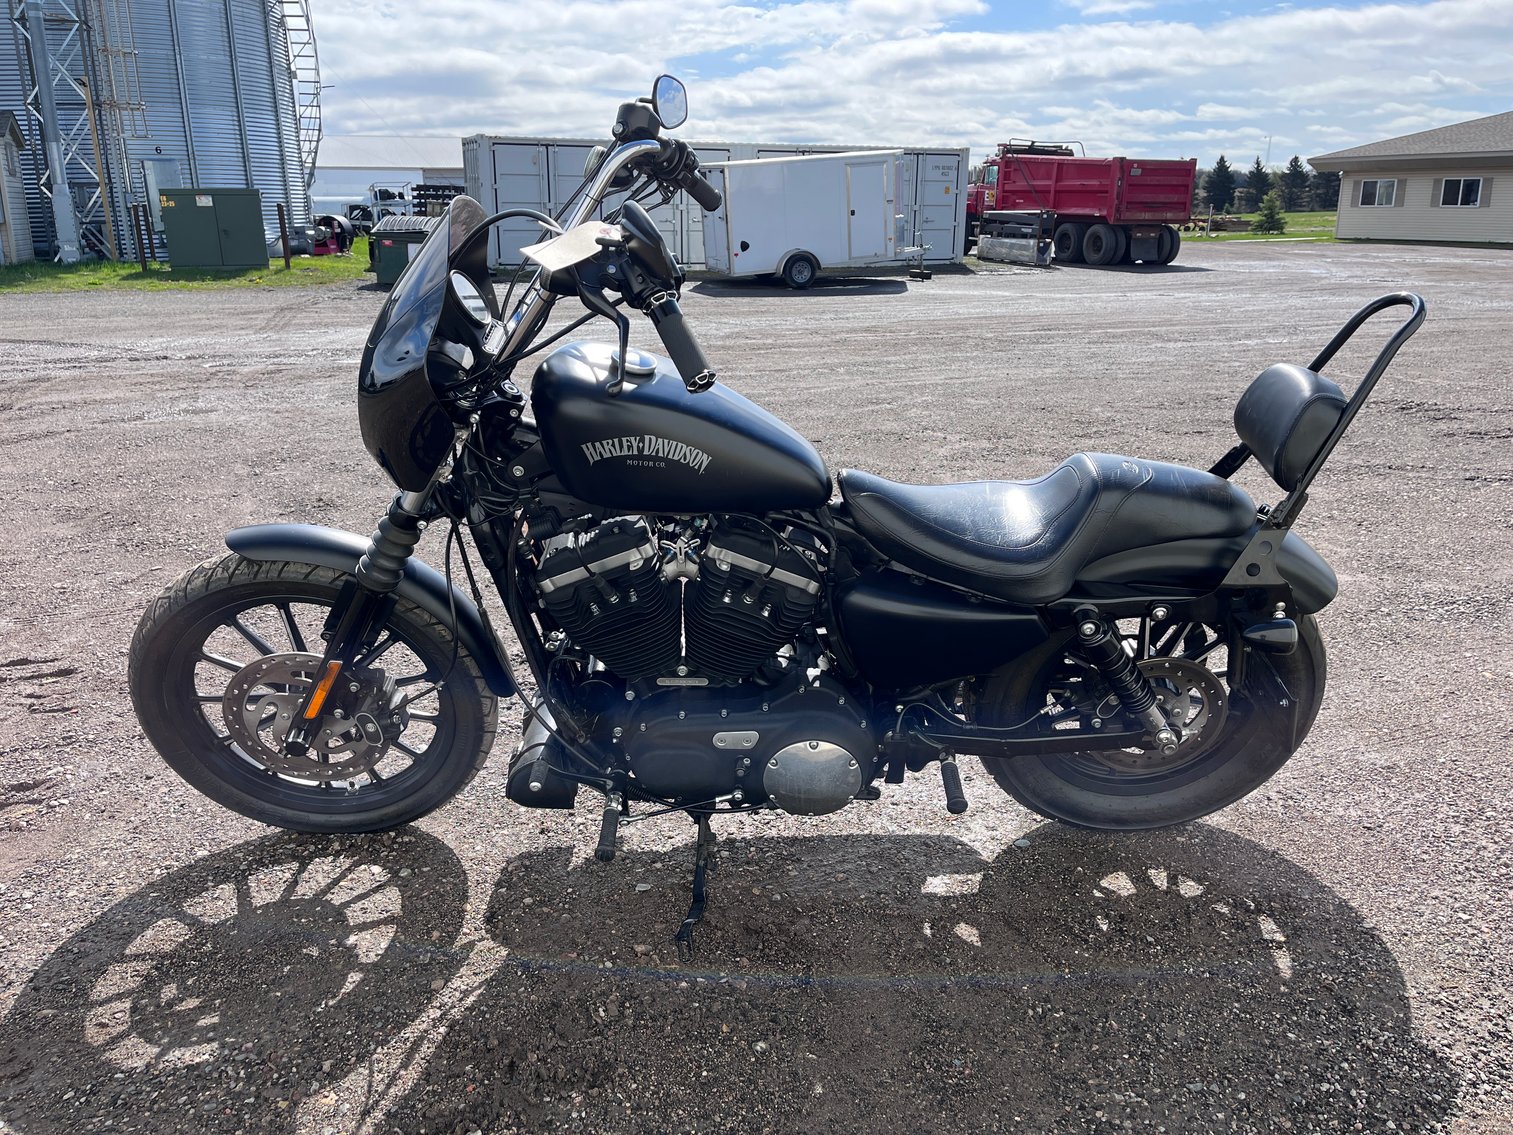 2014 Harley Davidson XL883N Sportster Motorcycle